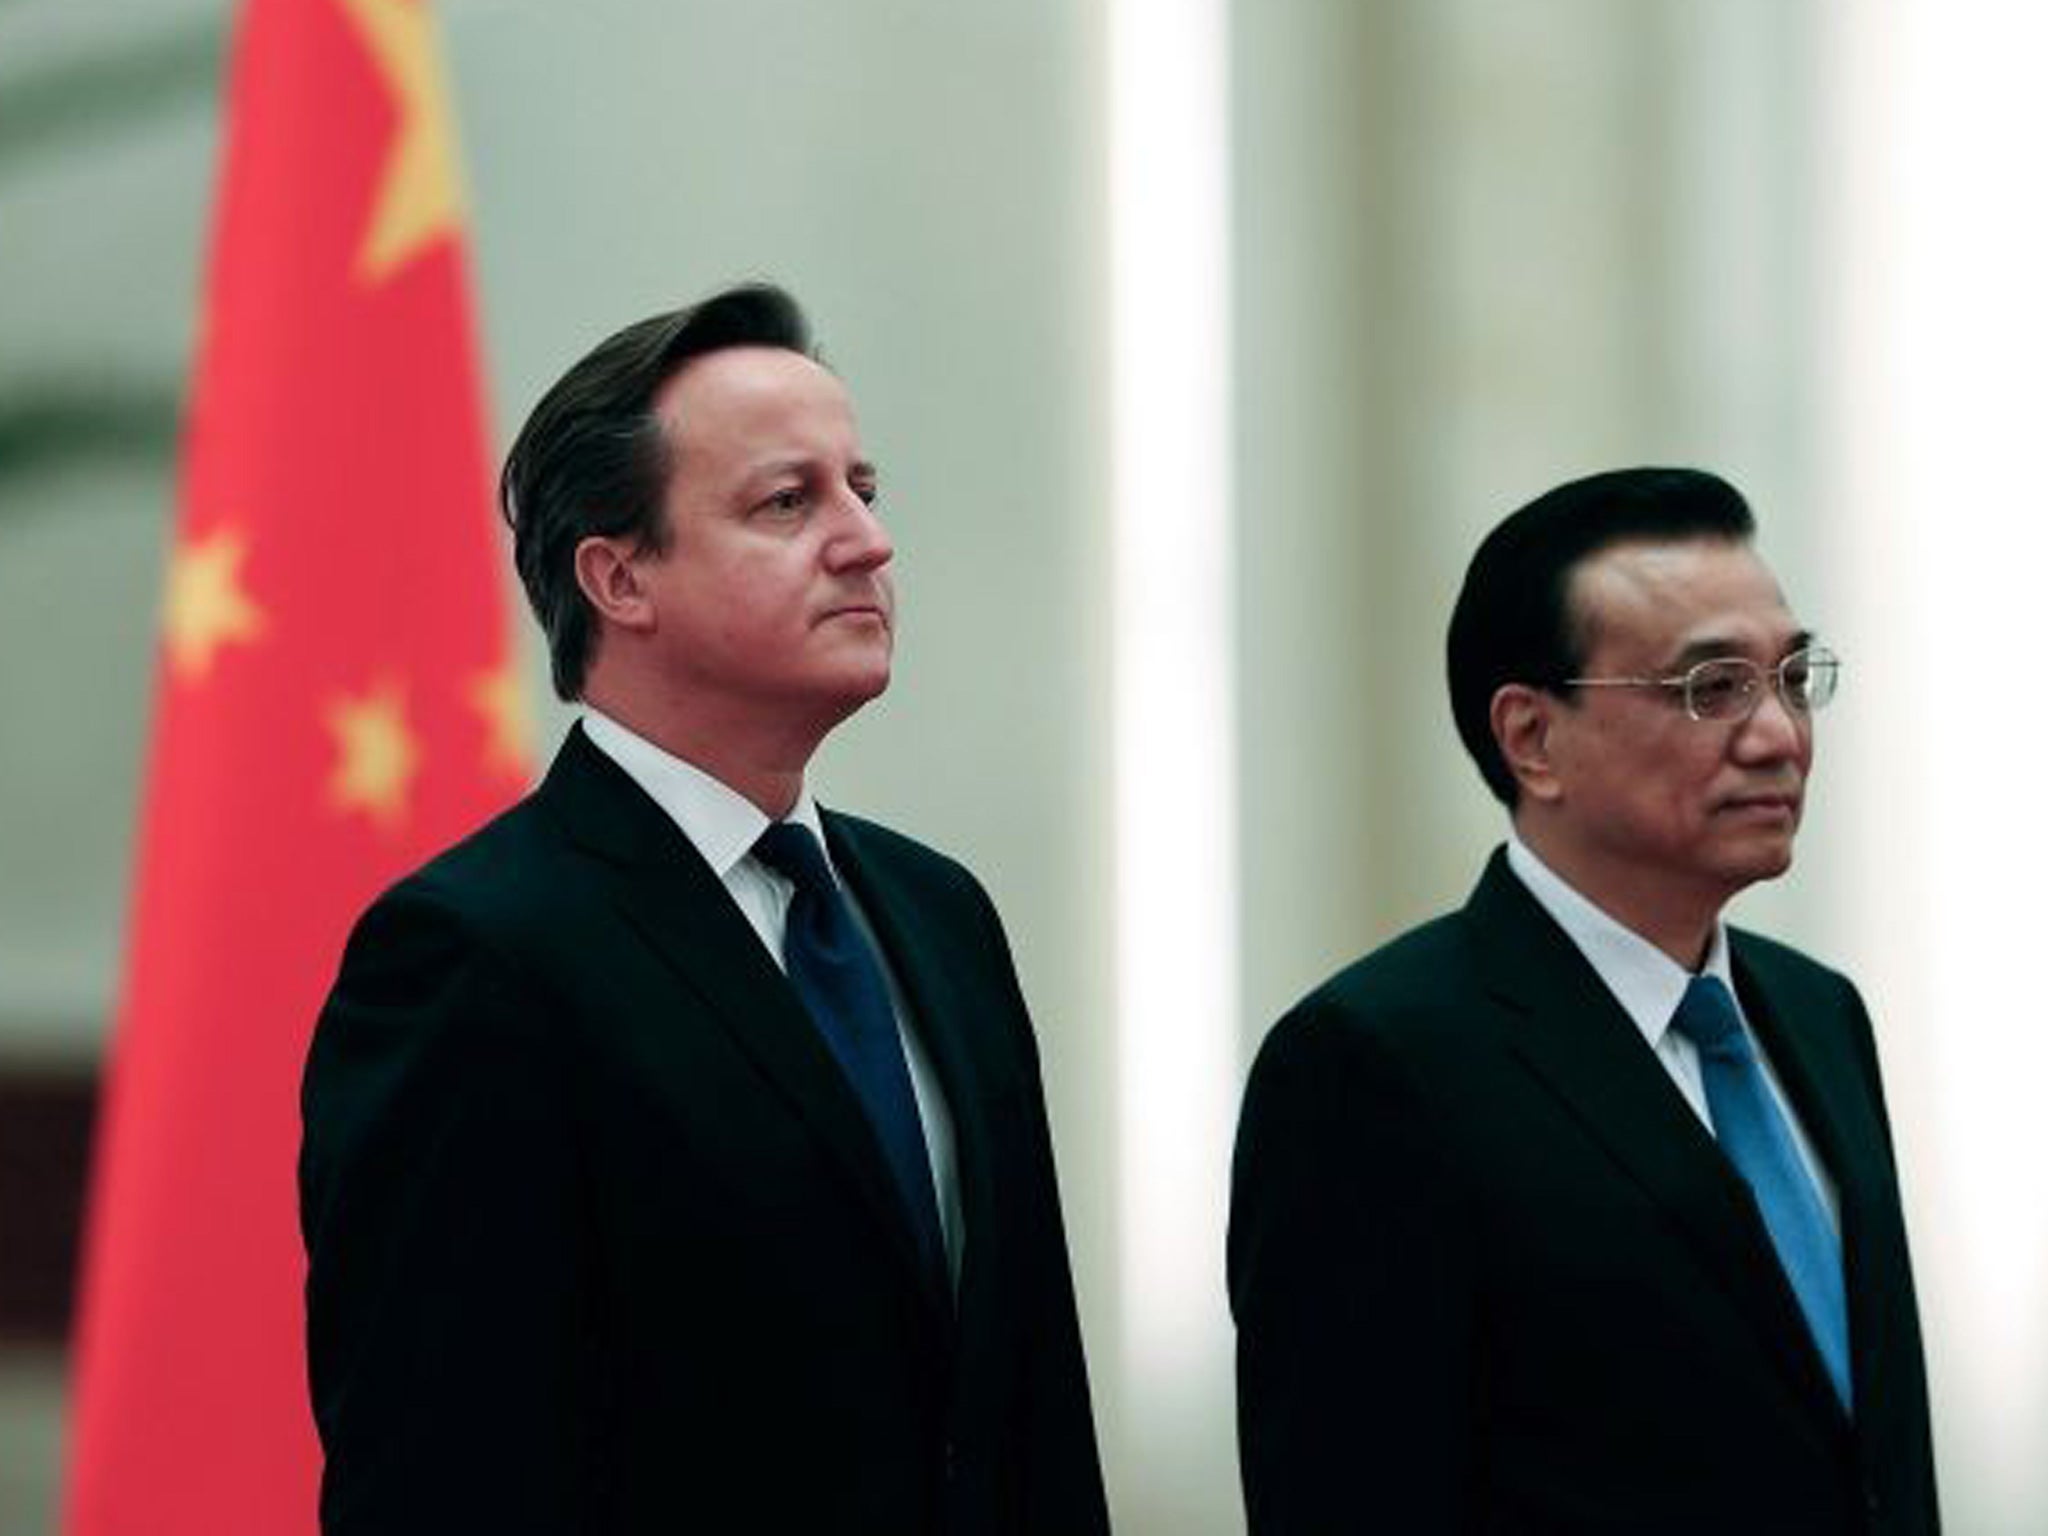 Chinese Premier Li Keqiang (right) and David Cameron (L). Li Keqiang will visit the UK this week